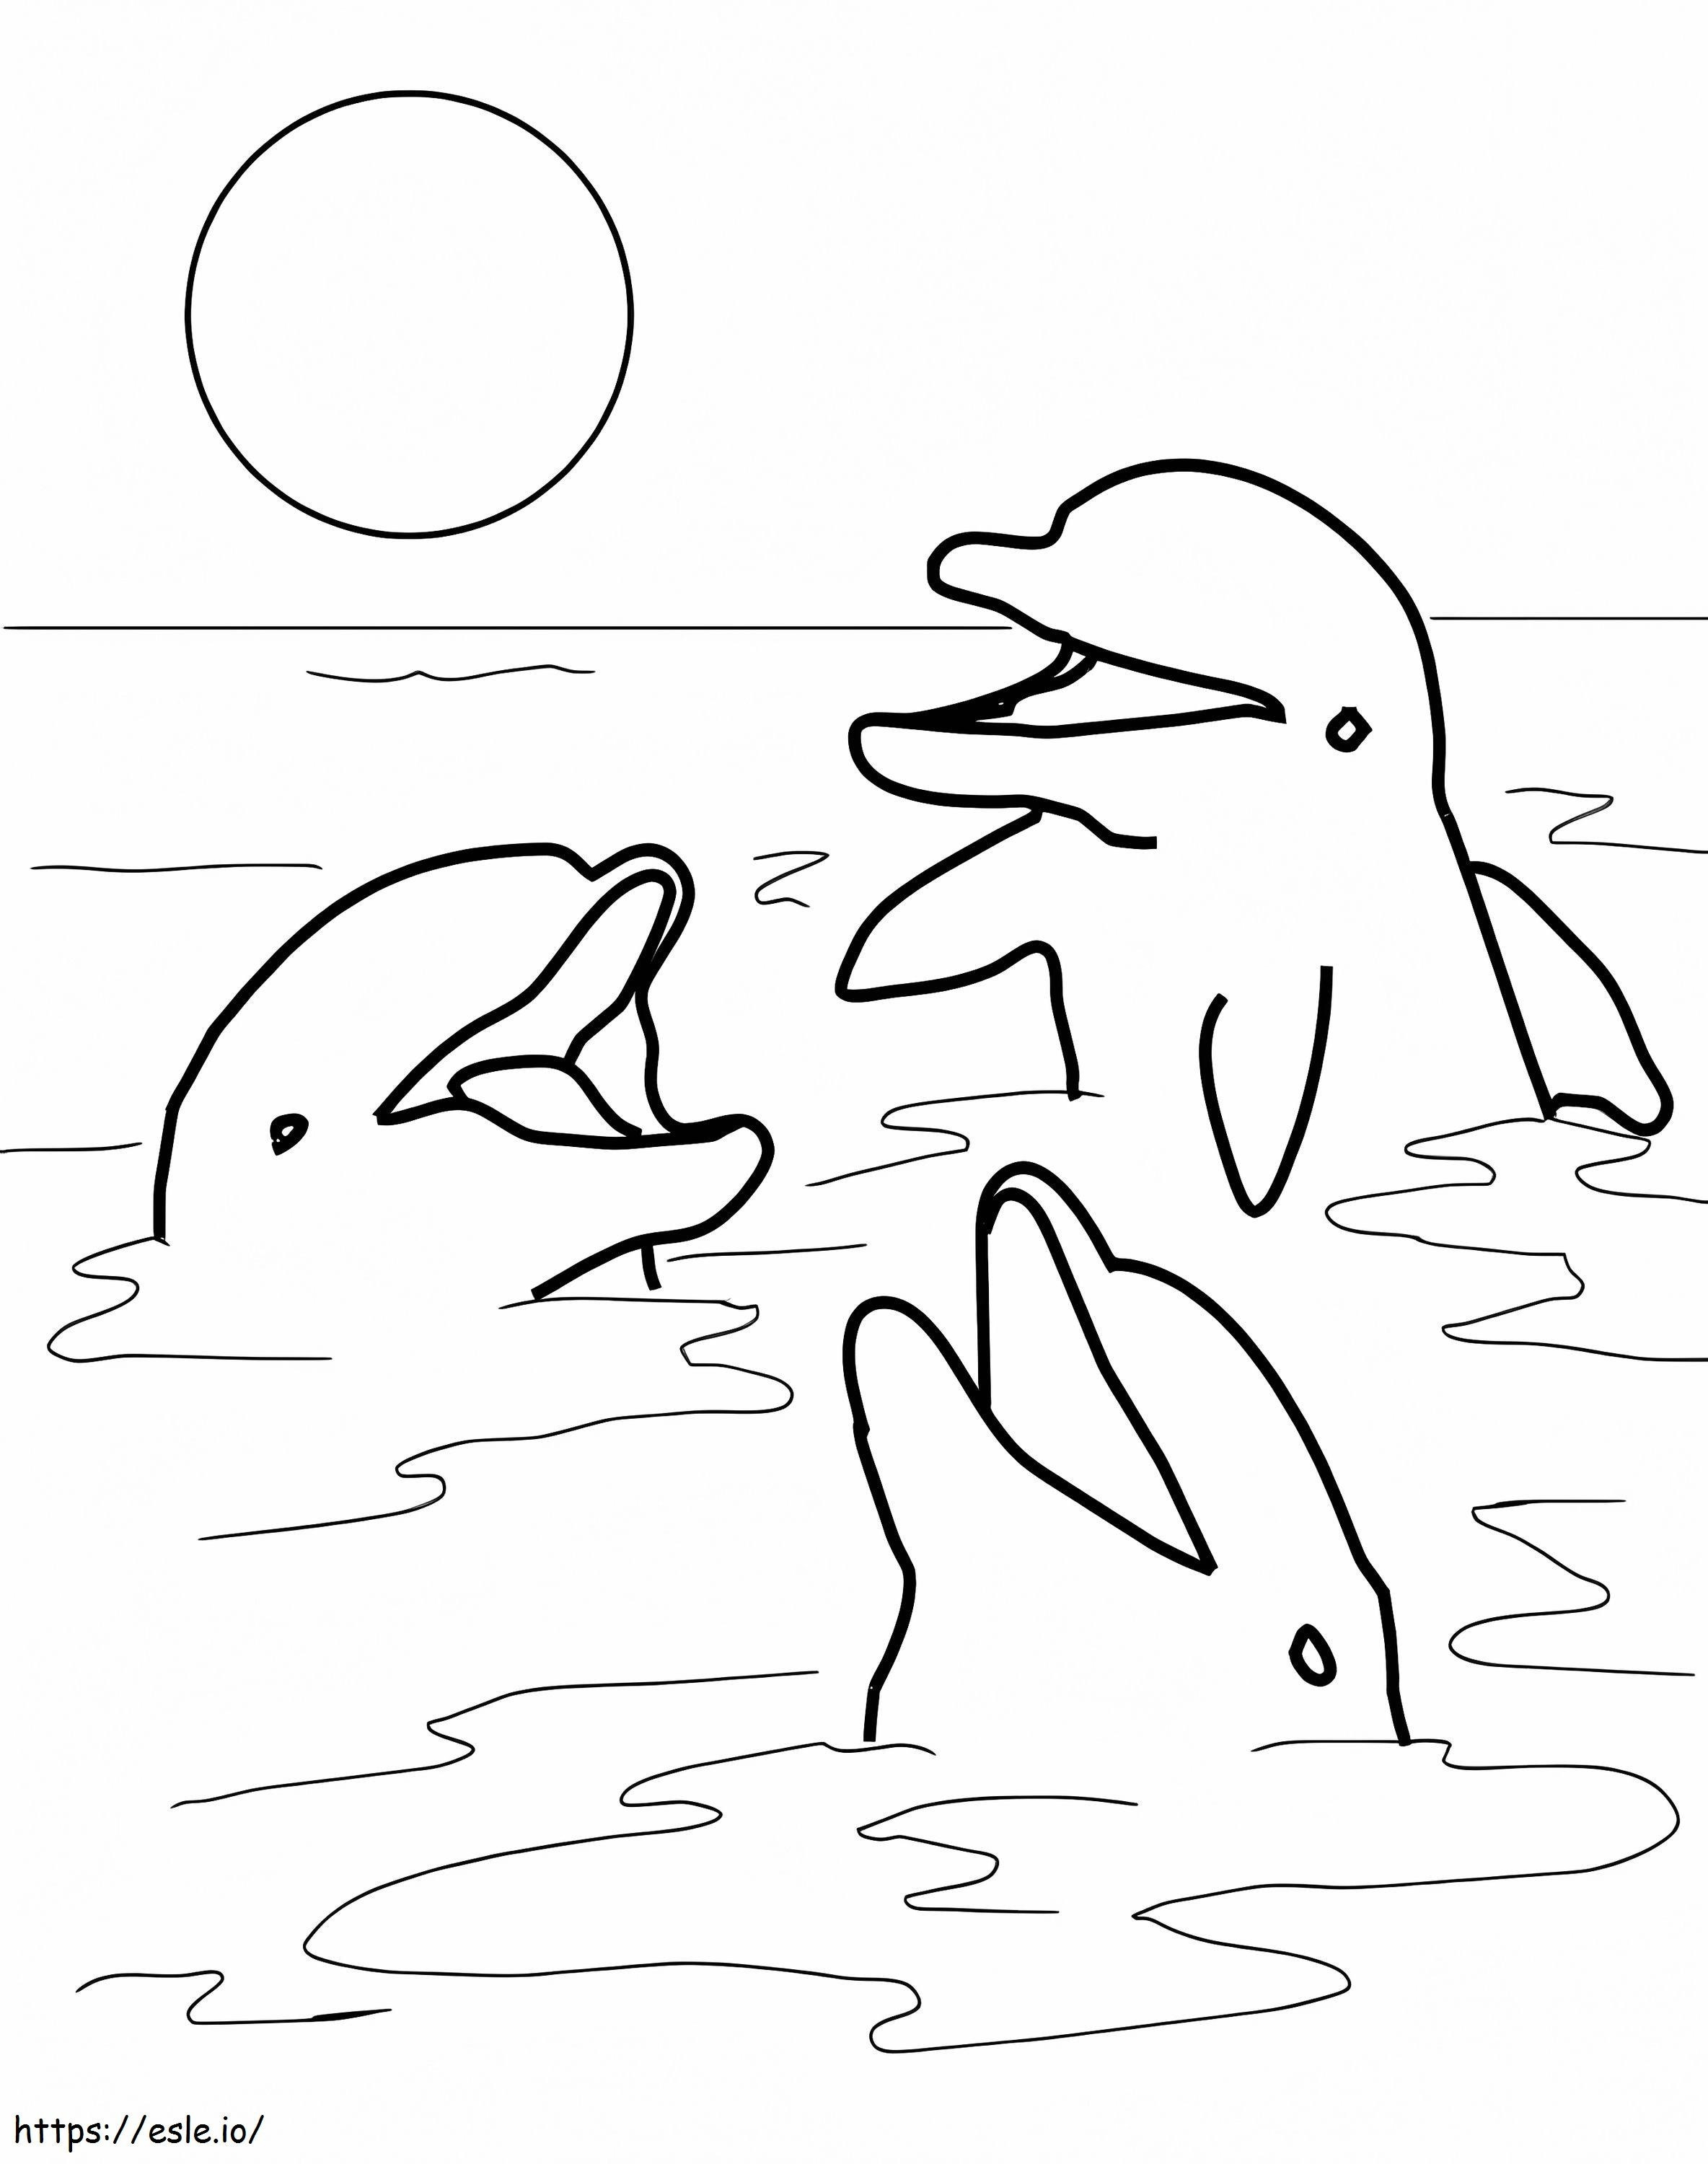 Süße Delfine ausmalbilder